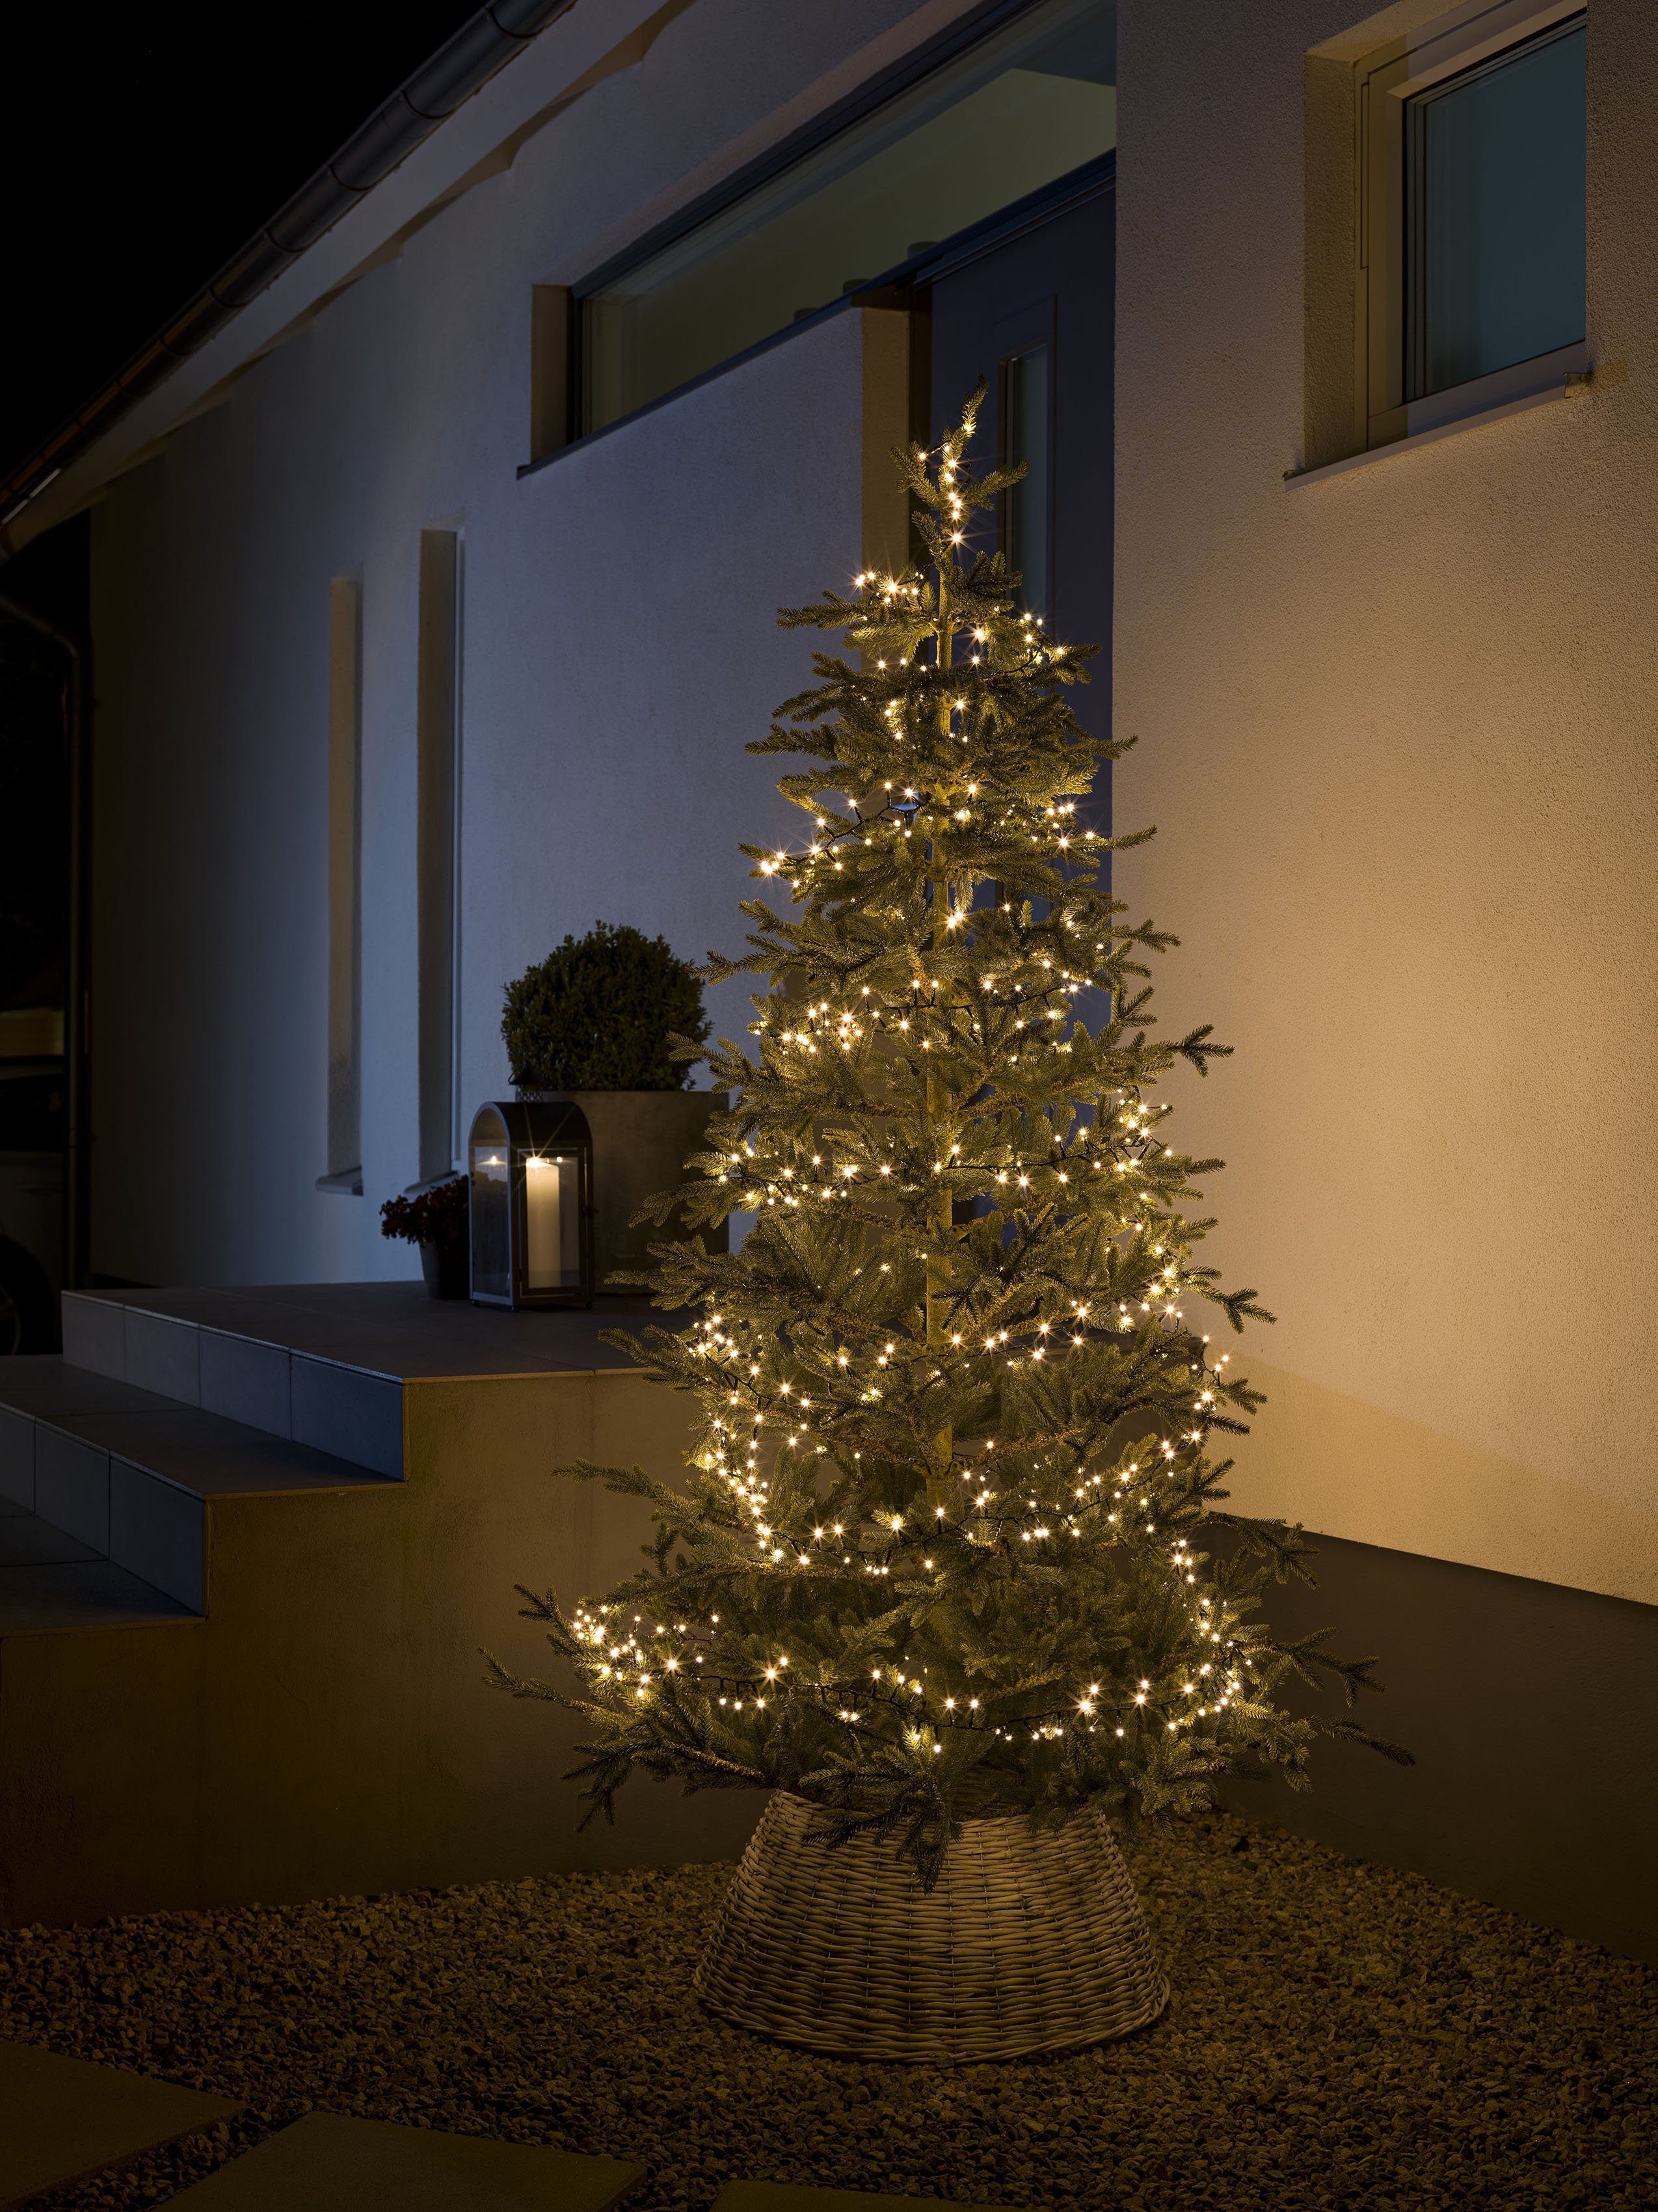 KONSTSMIDE LED-Lichterkette Weihnachtsdeko aussen, 600-flammig, Micro LED  Compactlights, 600 warmweiße Dioden, Energiesparend durch LED-Technik